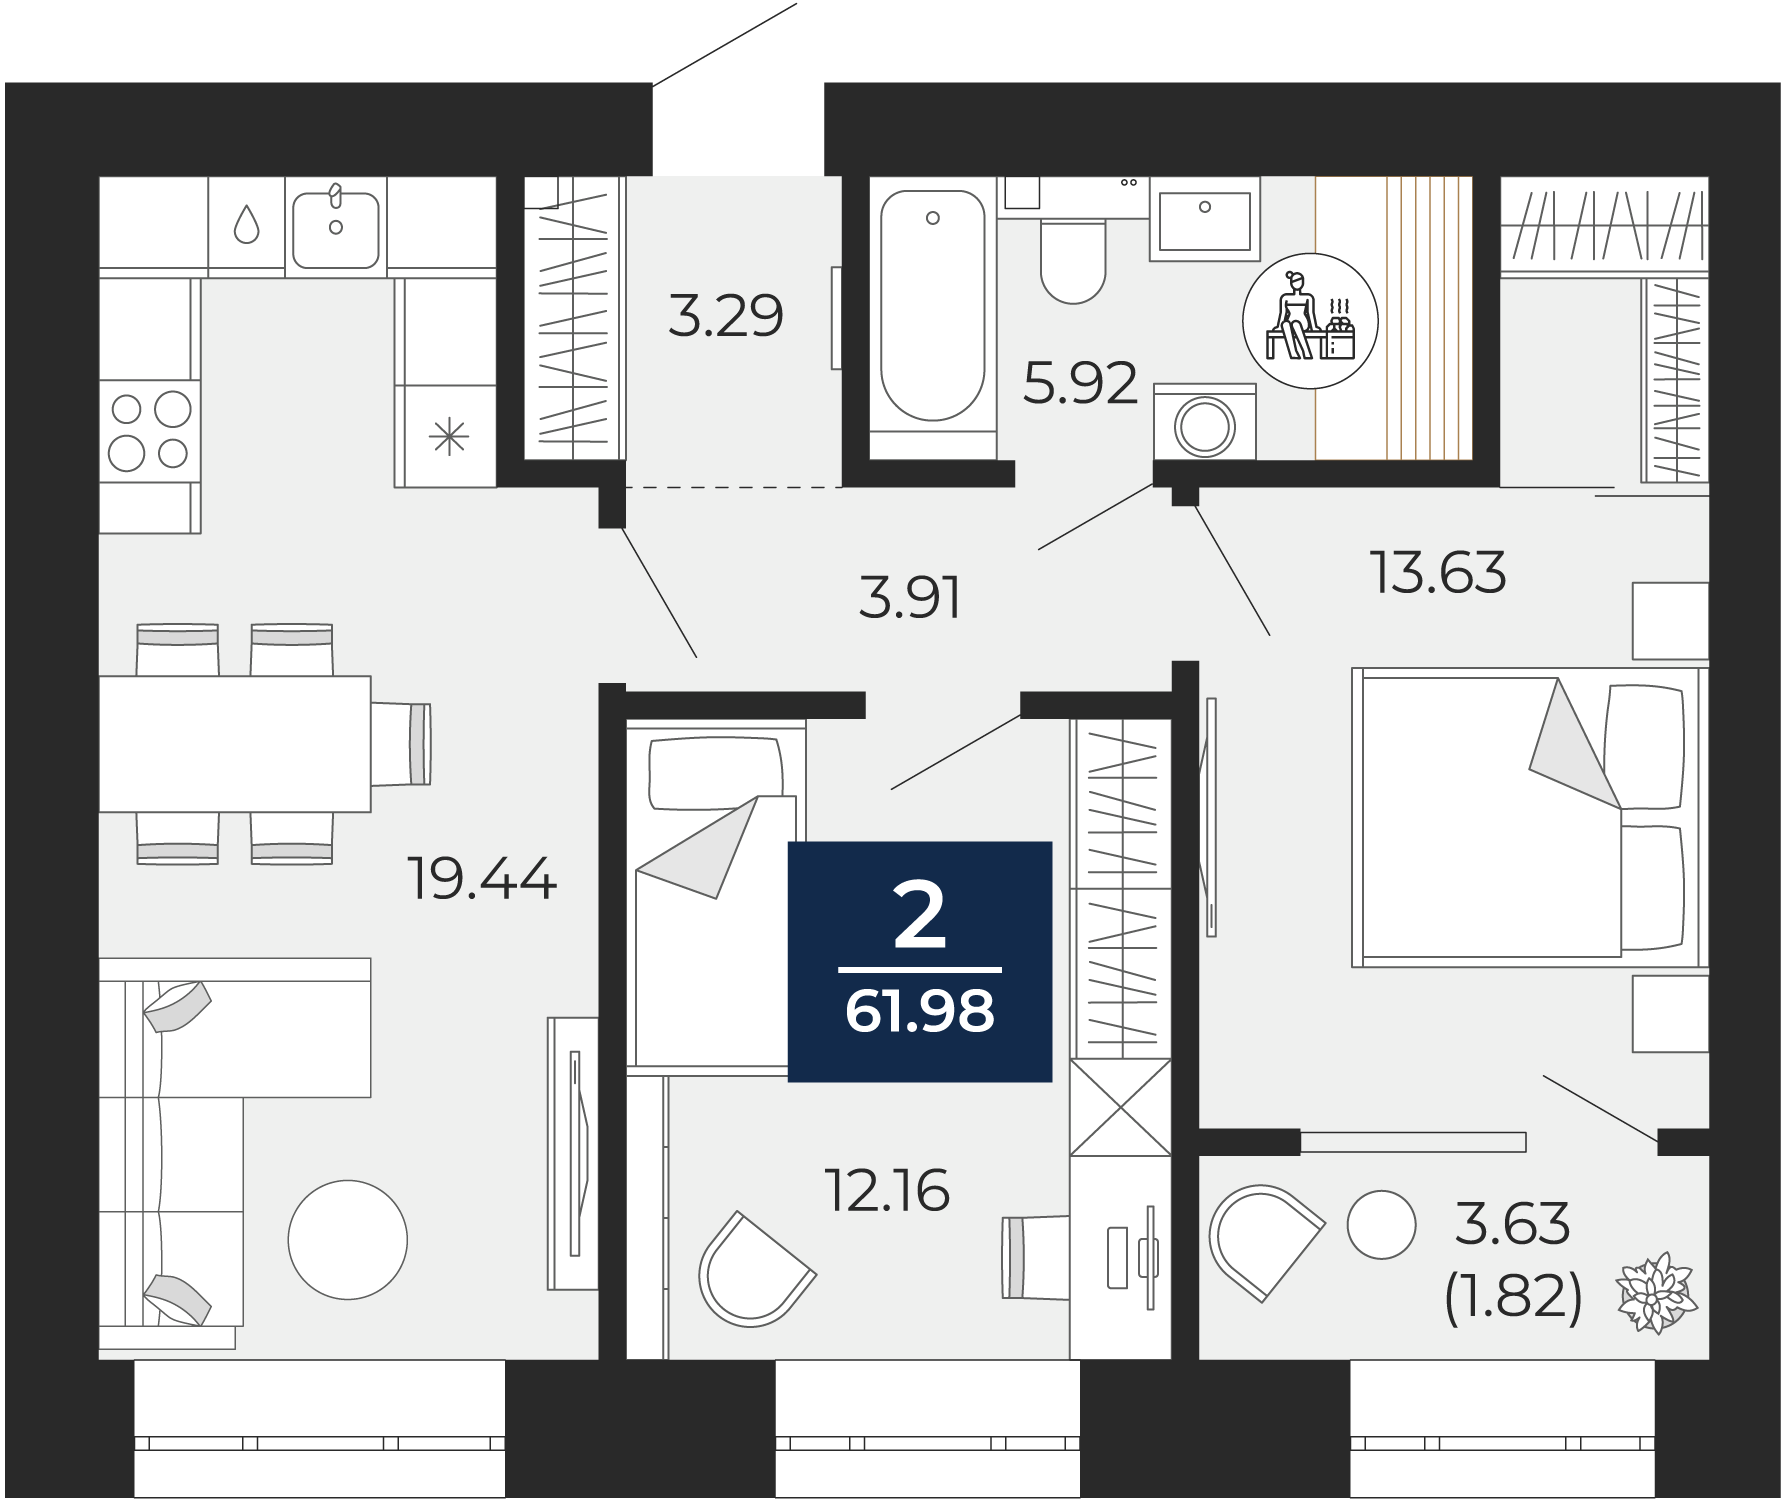 Квартира № 130, 2-комнатная, 61.98 кв. м, 2 этаж